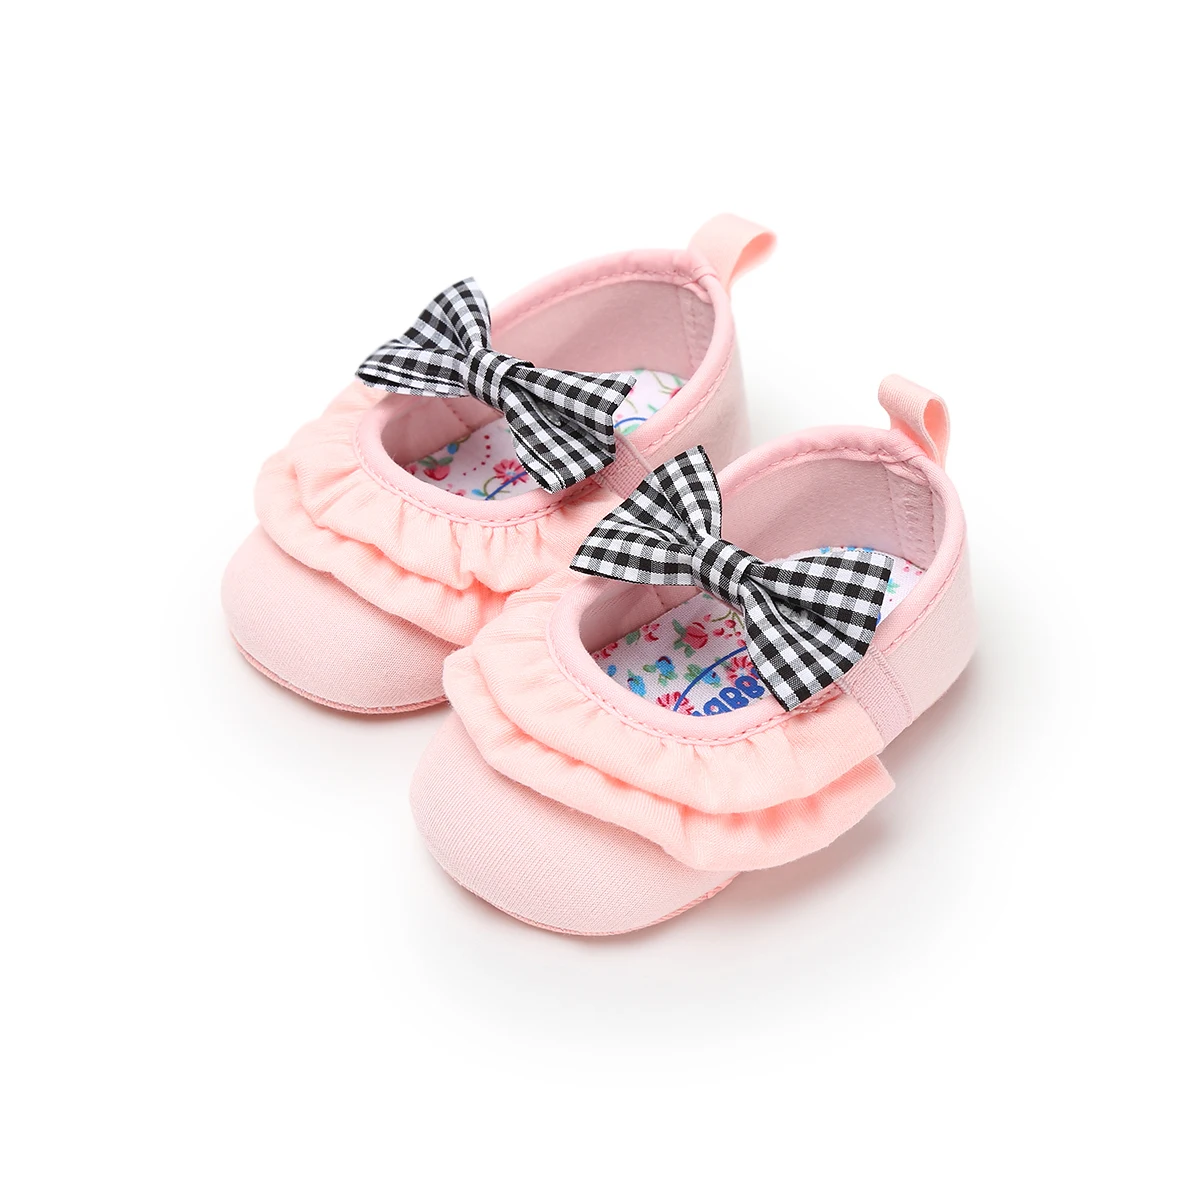 Pudcoco новорожденных обувь для девочек бантом Мода младенческой малыша Prewalker лоферы на мягкой подошве кроватки обувь